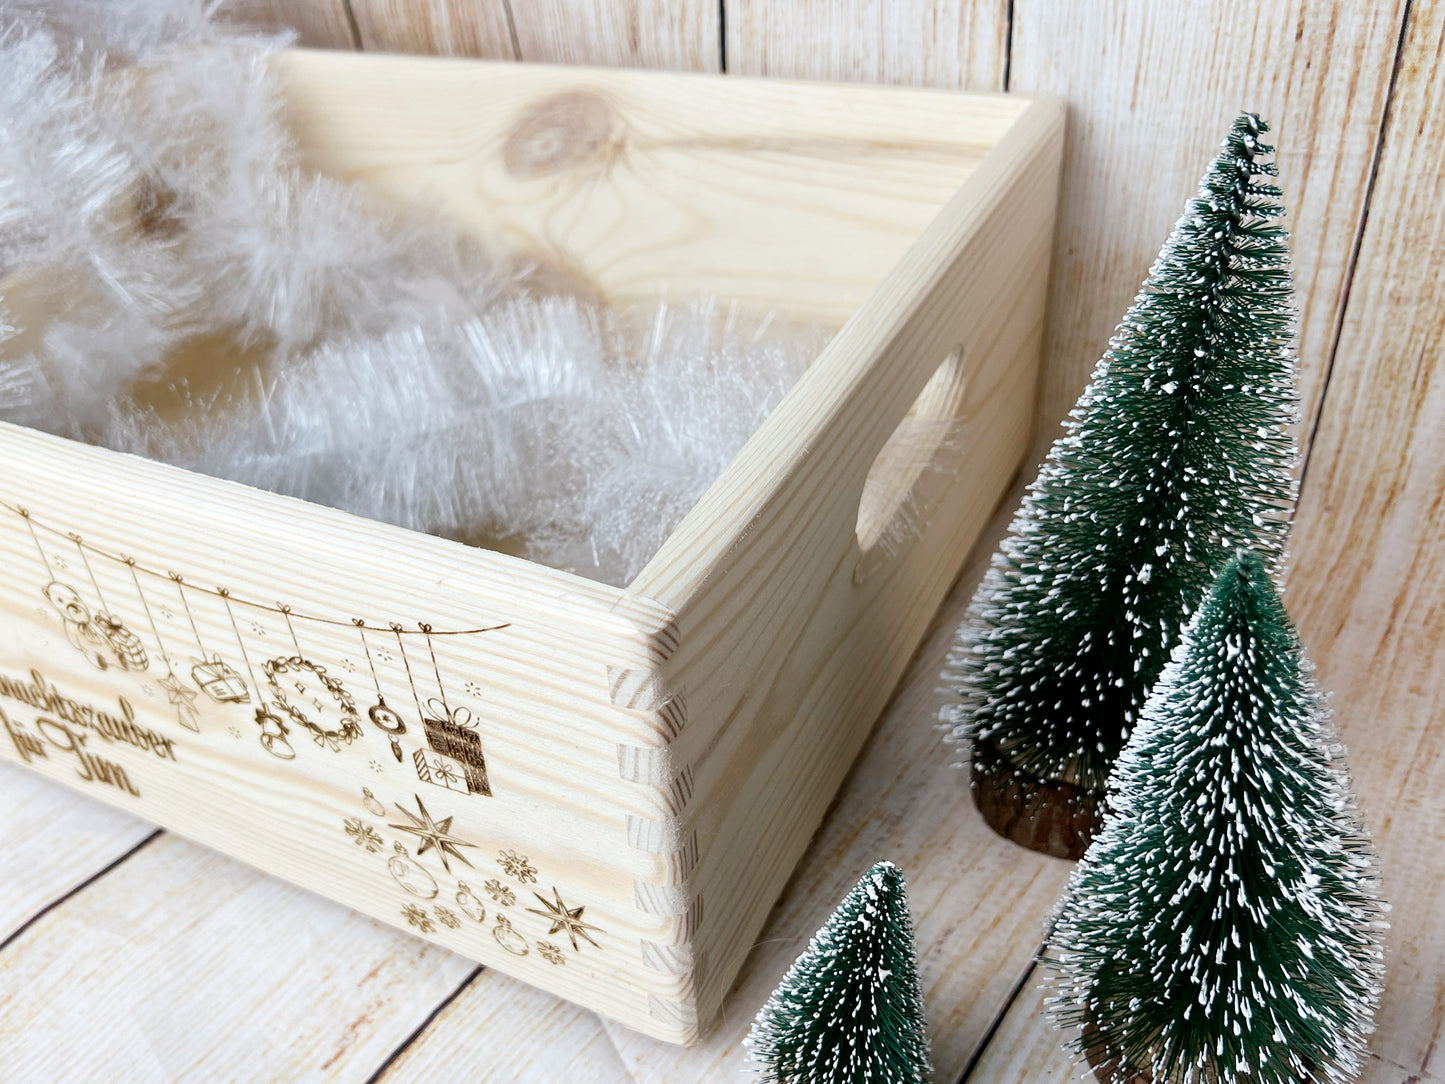 Personalisierte Weihnachtsbox aus Holz - Festliche Geschenkebox mit Wunschgravur und Weihnachtsmotiv